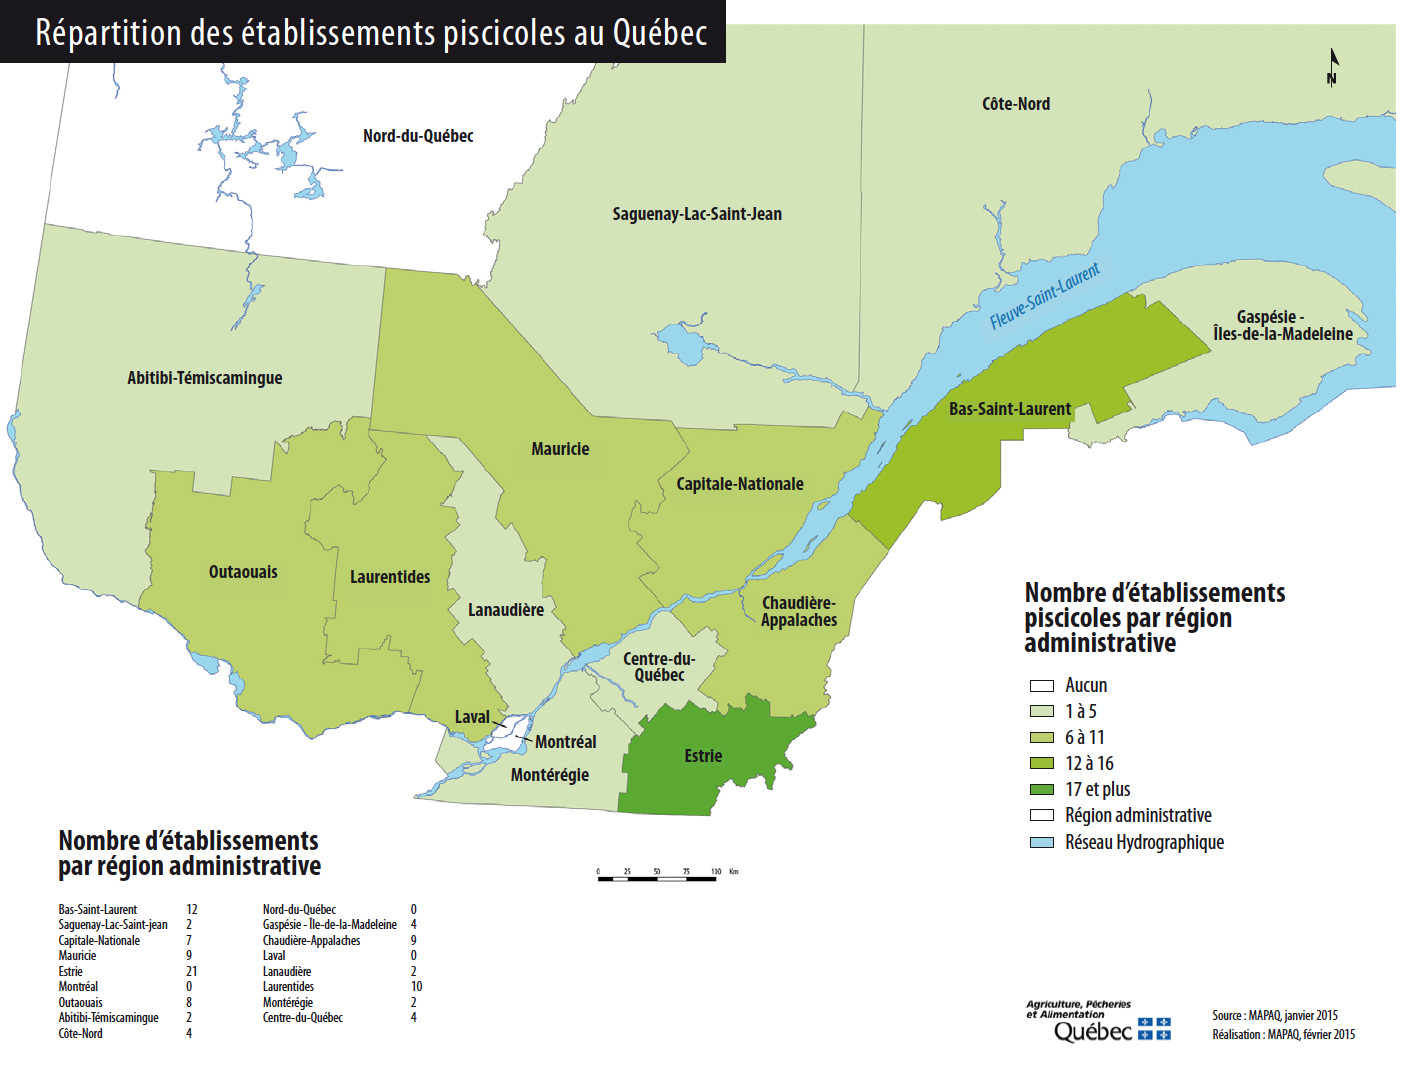 Répartition des pisciculteurs au Québec - Nombre d'établissements par région administrative